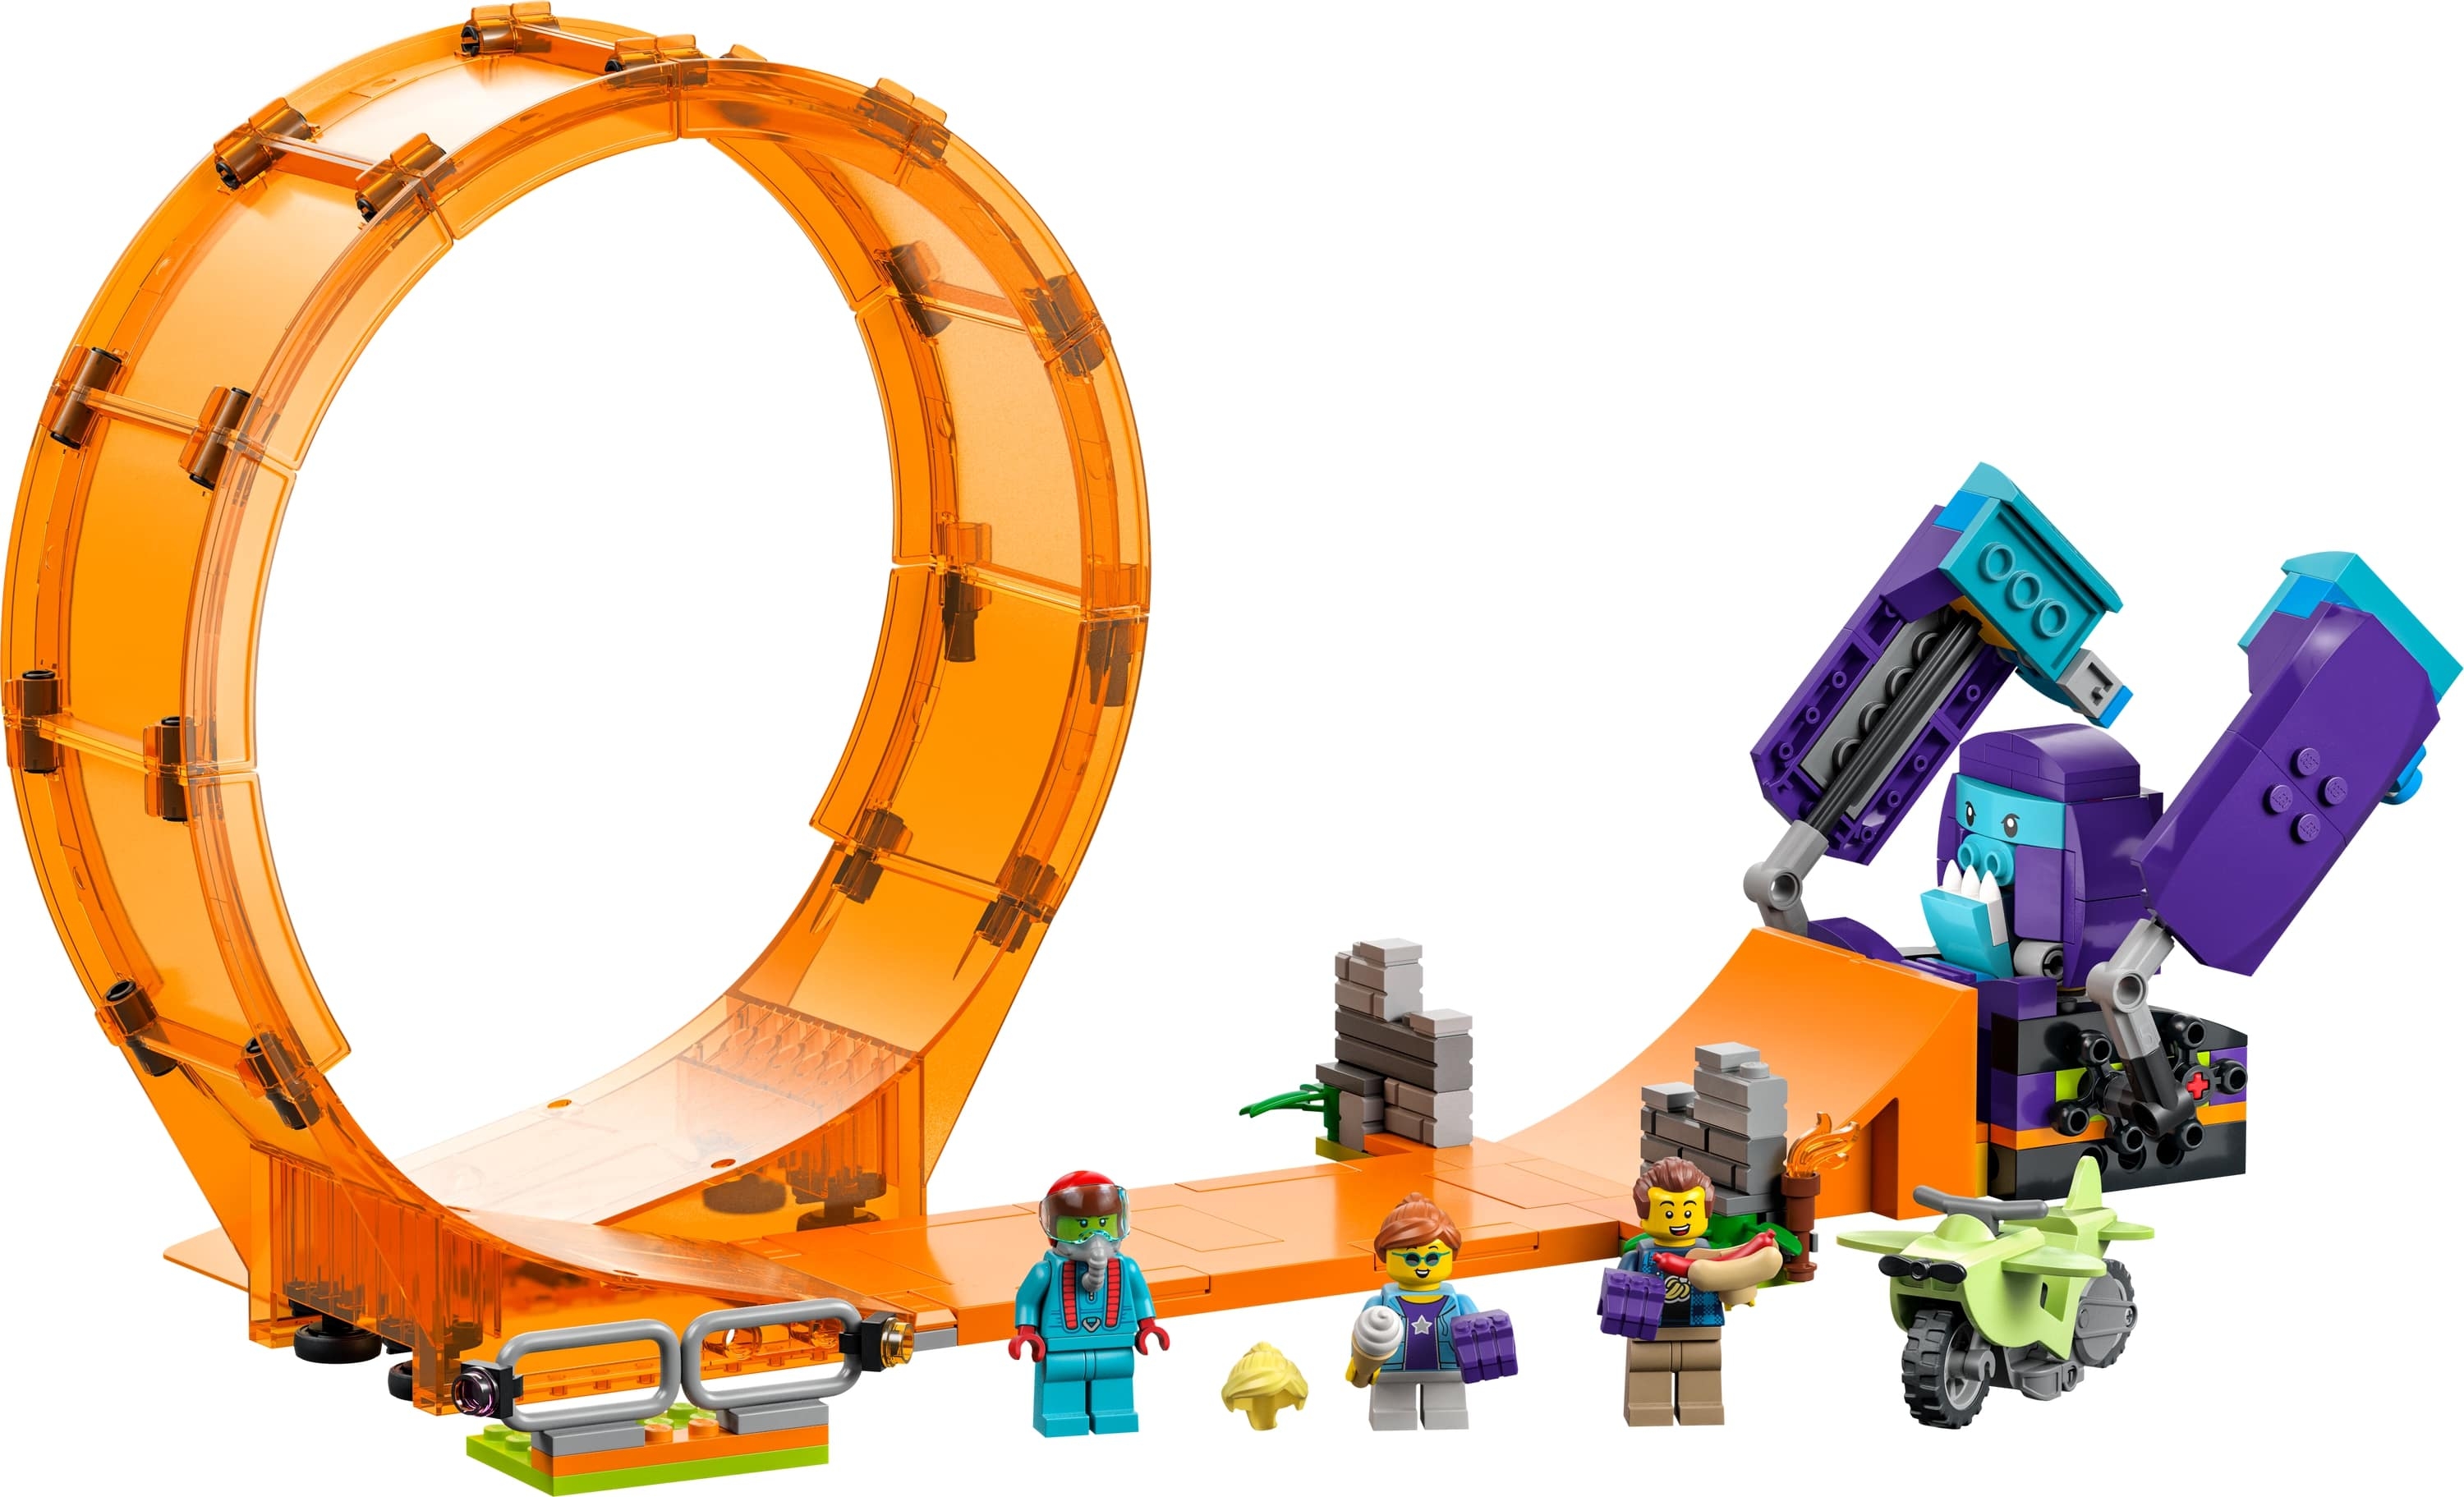 LEGO City: Kaskaderska pętla i szympans demolka